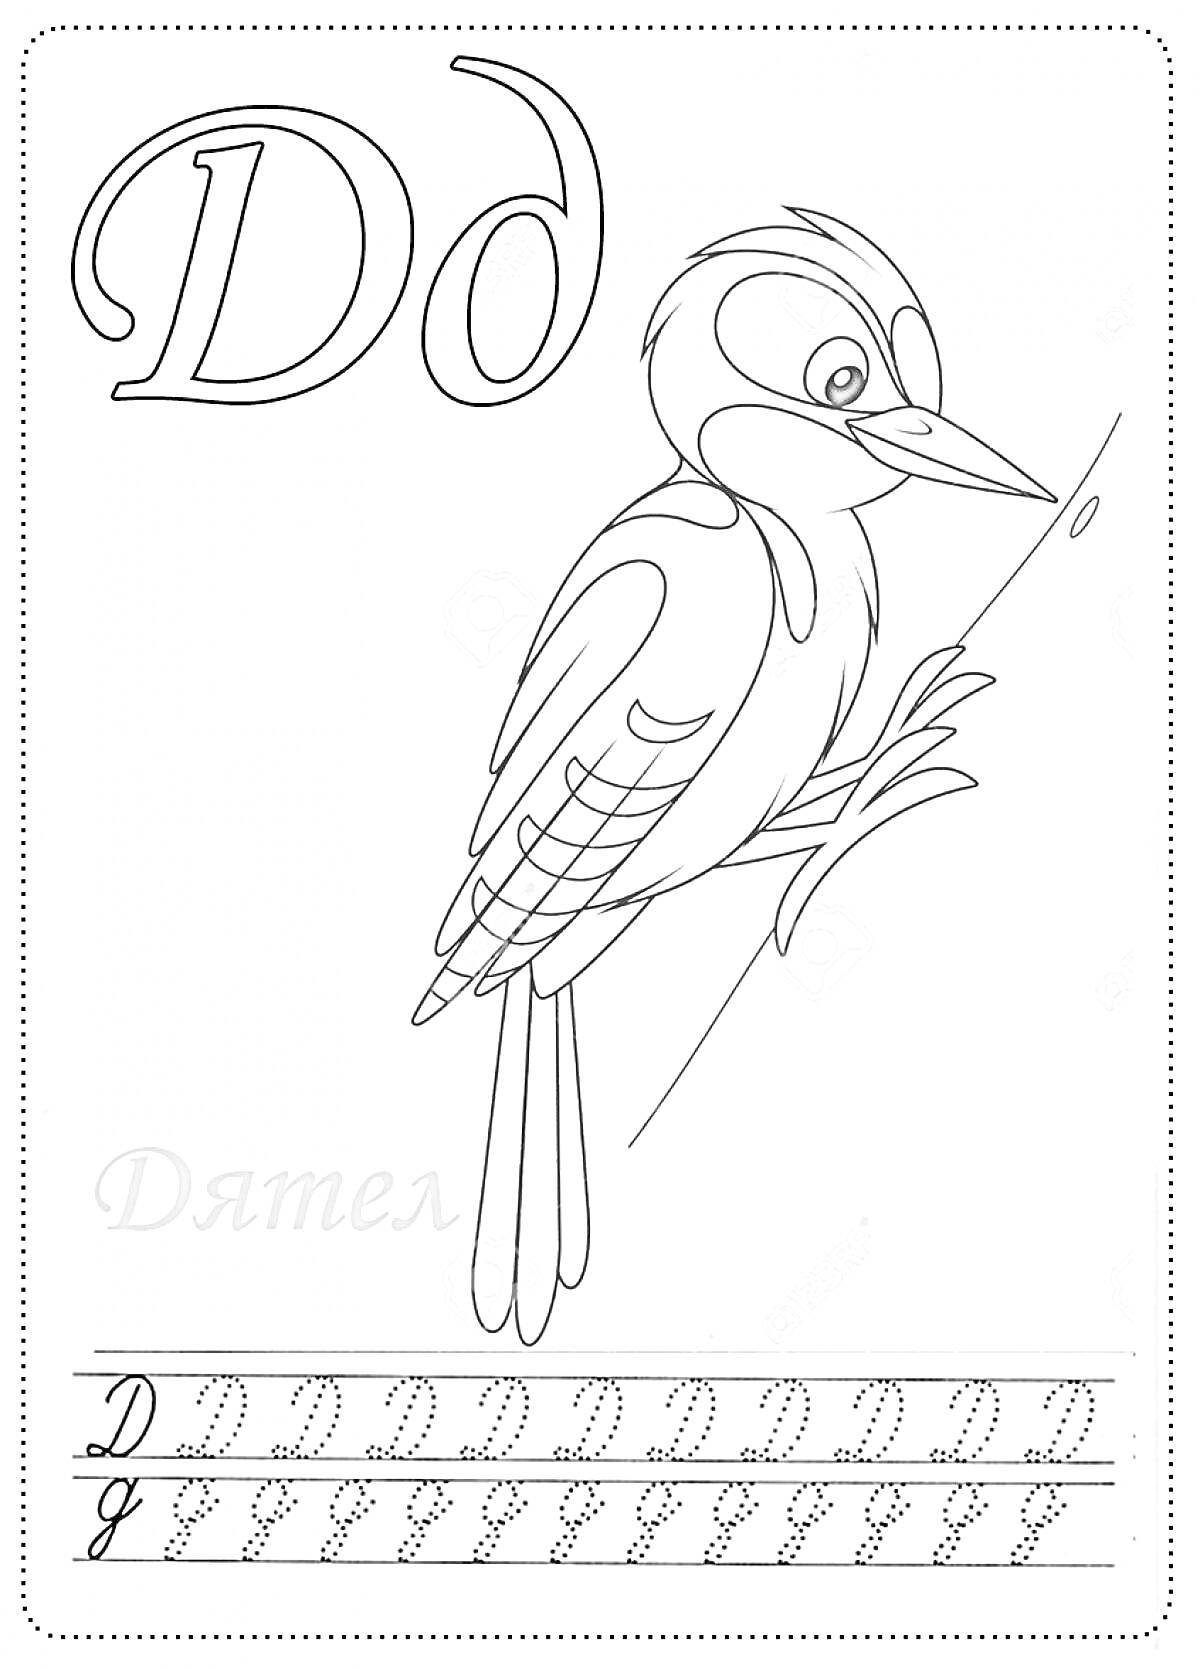 Раскраска Буква Д - Дятел, прописная и строчная форма буквы Д, изображение дятла, упражнение по написанию буквы